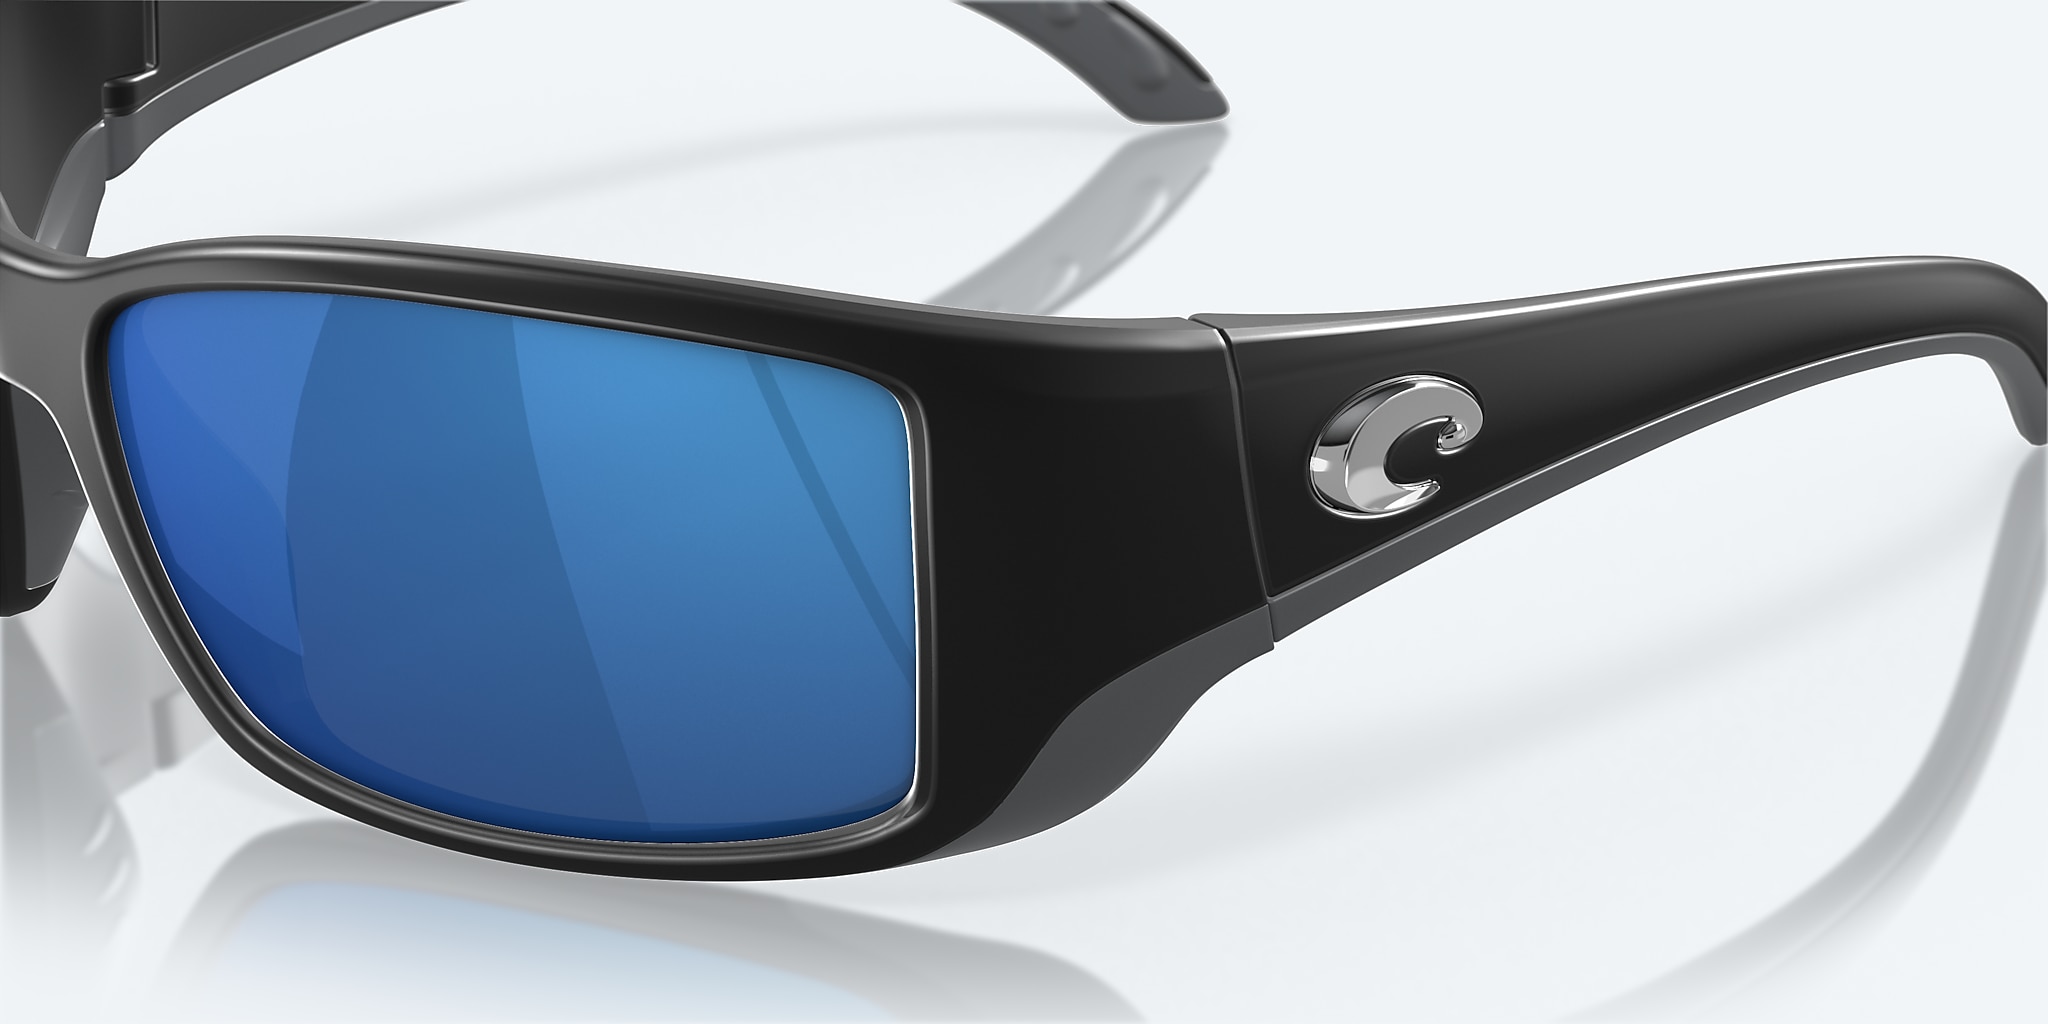 Blackfin Polarized Sunglasses in Blue Mirror